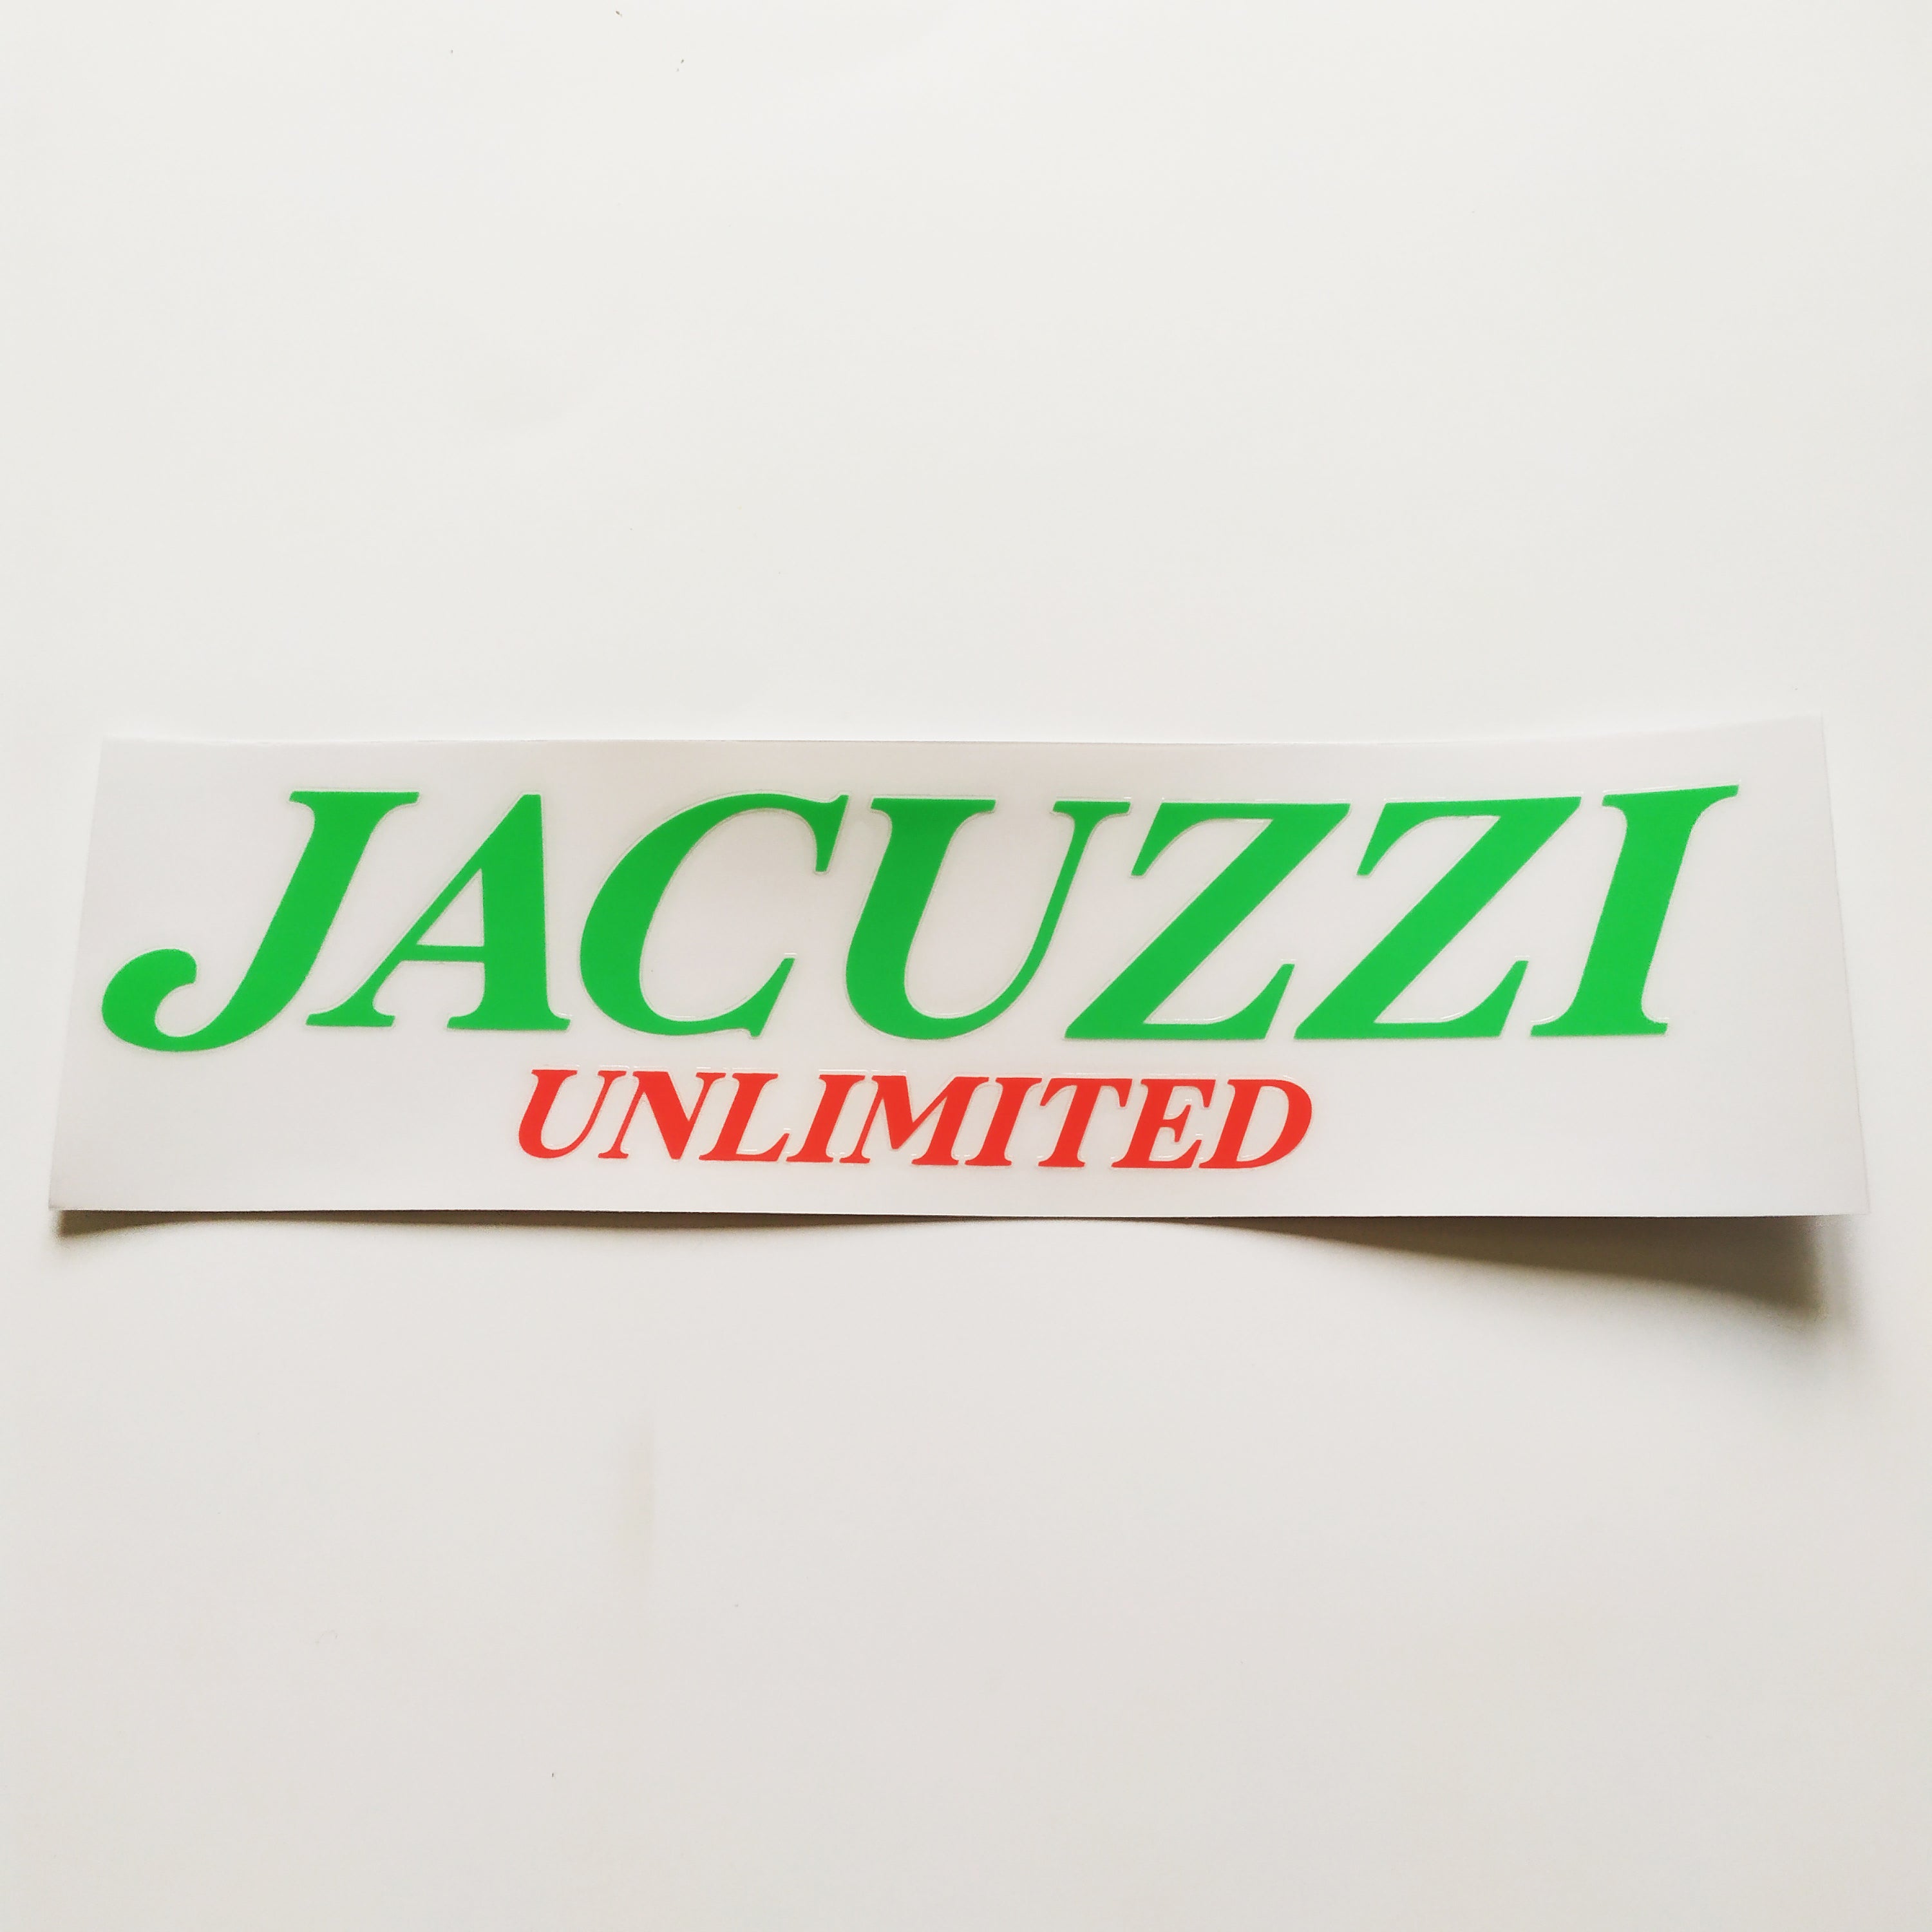 Jacuzzi Unlimited Skateboard Sticker - 21.5cm across approx - SkateboardStickers.com